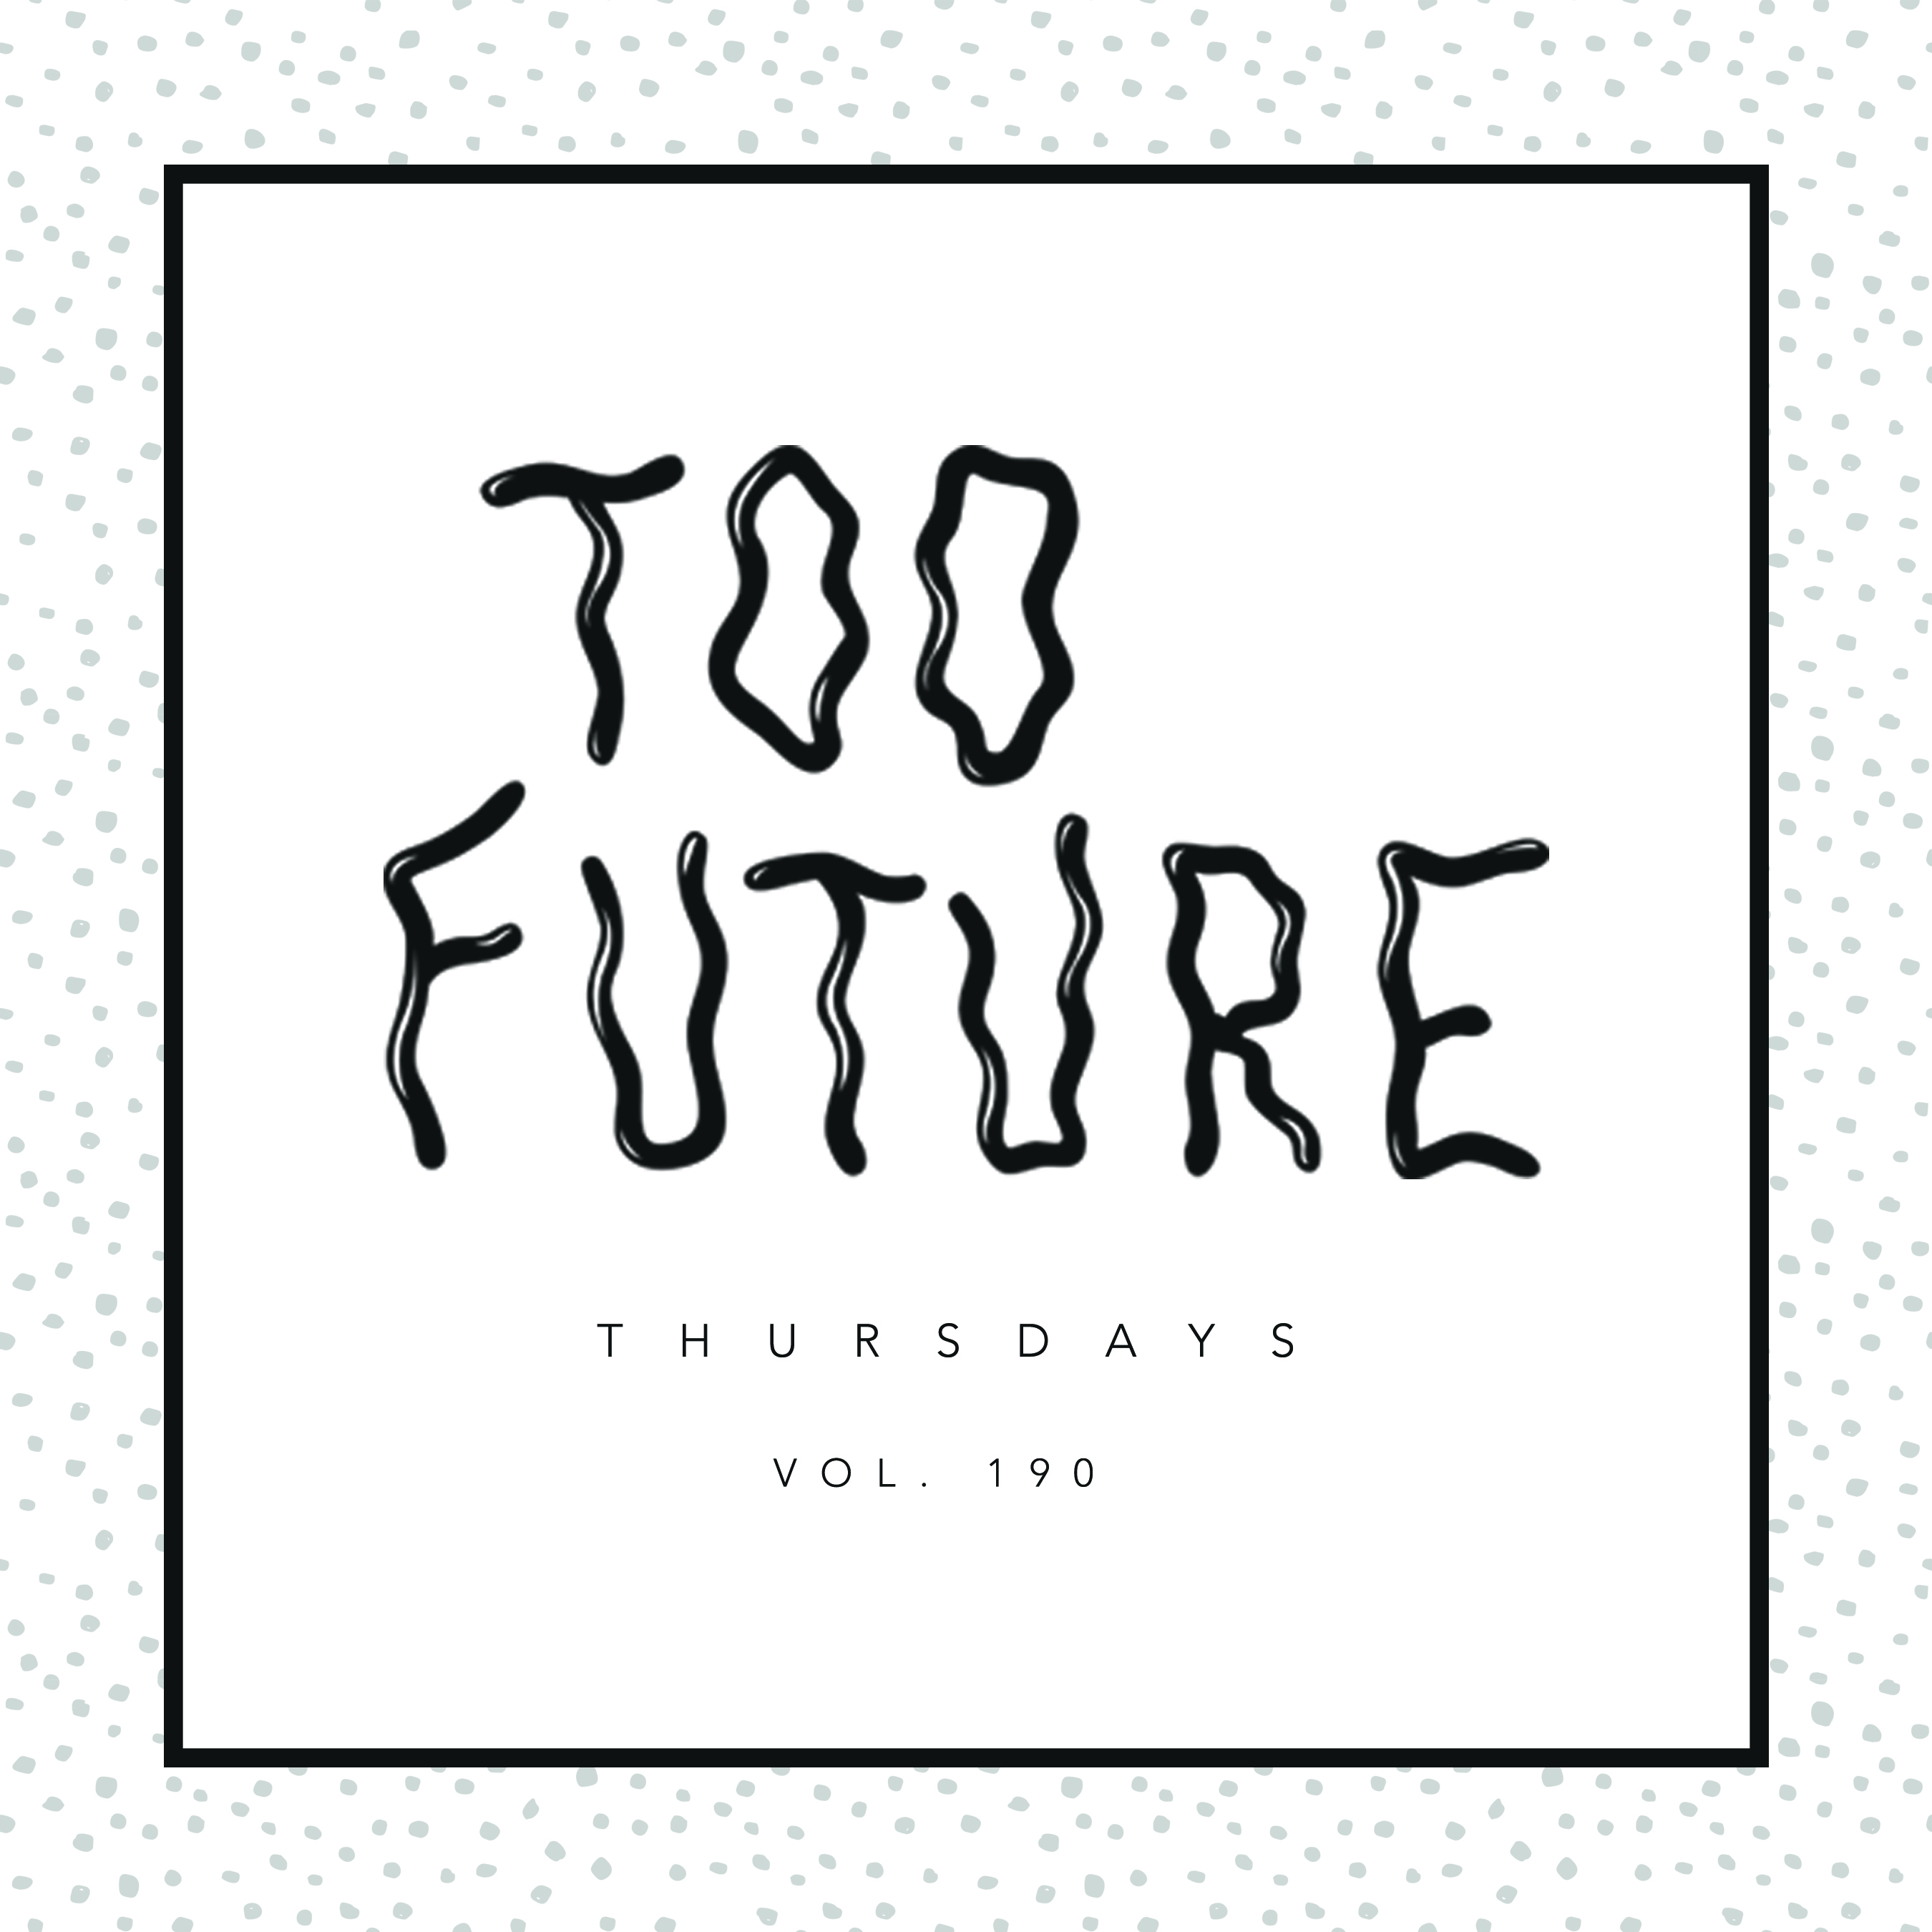 too-future-thursdays-vol-190